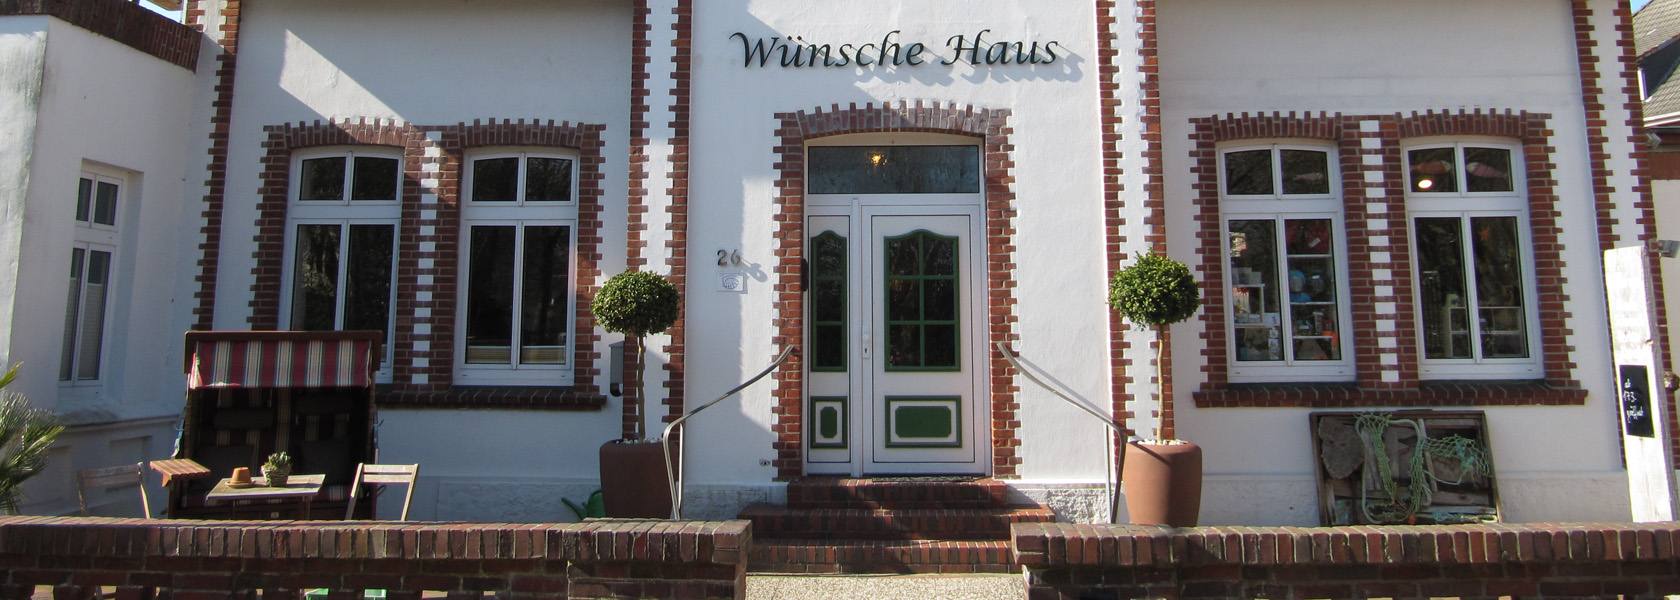 Wünsche-Haus auf Wangerooge, © Die Nordsee GmbH, Amke Behrends